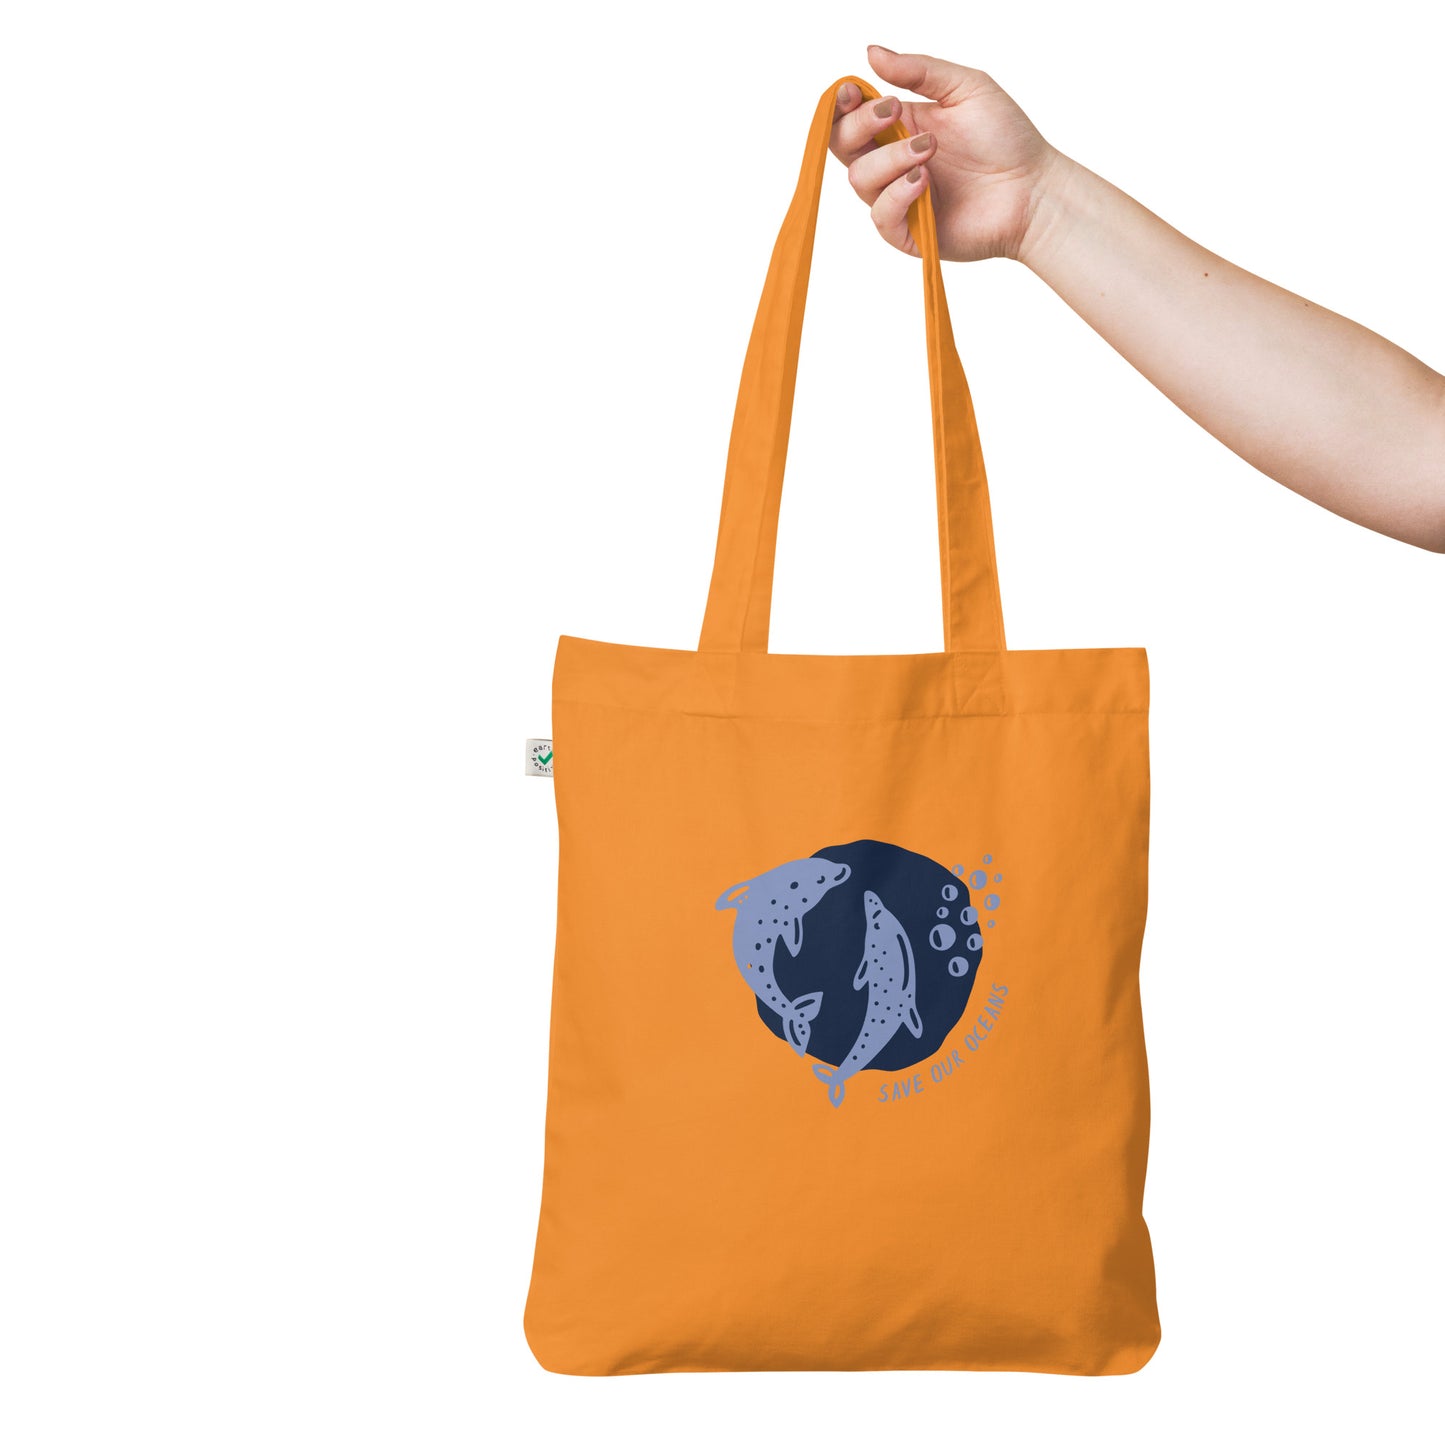 Organic fashion tote bag